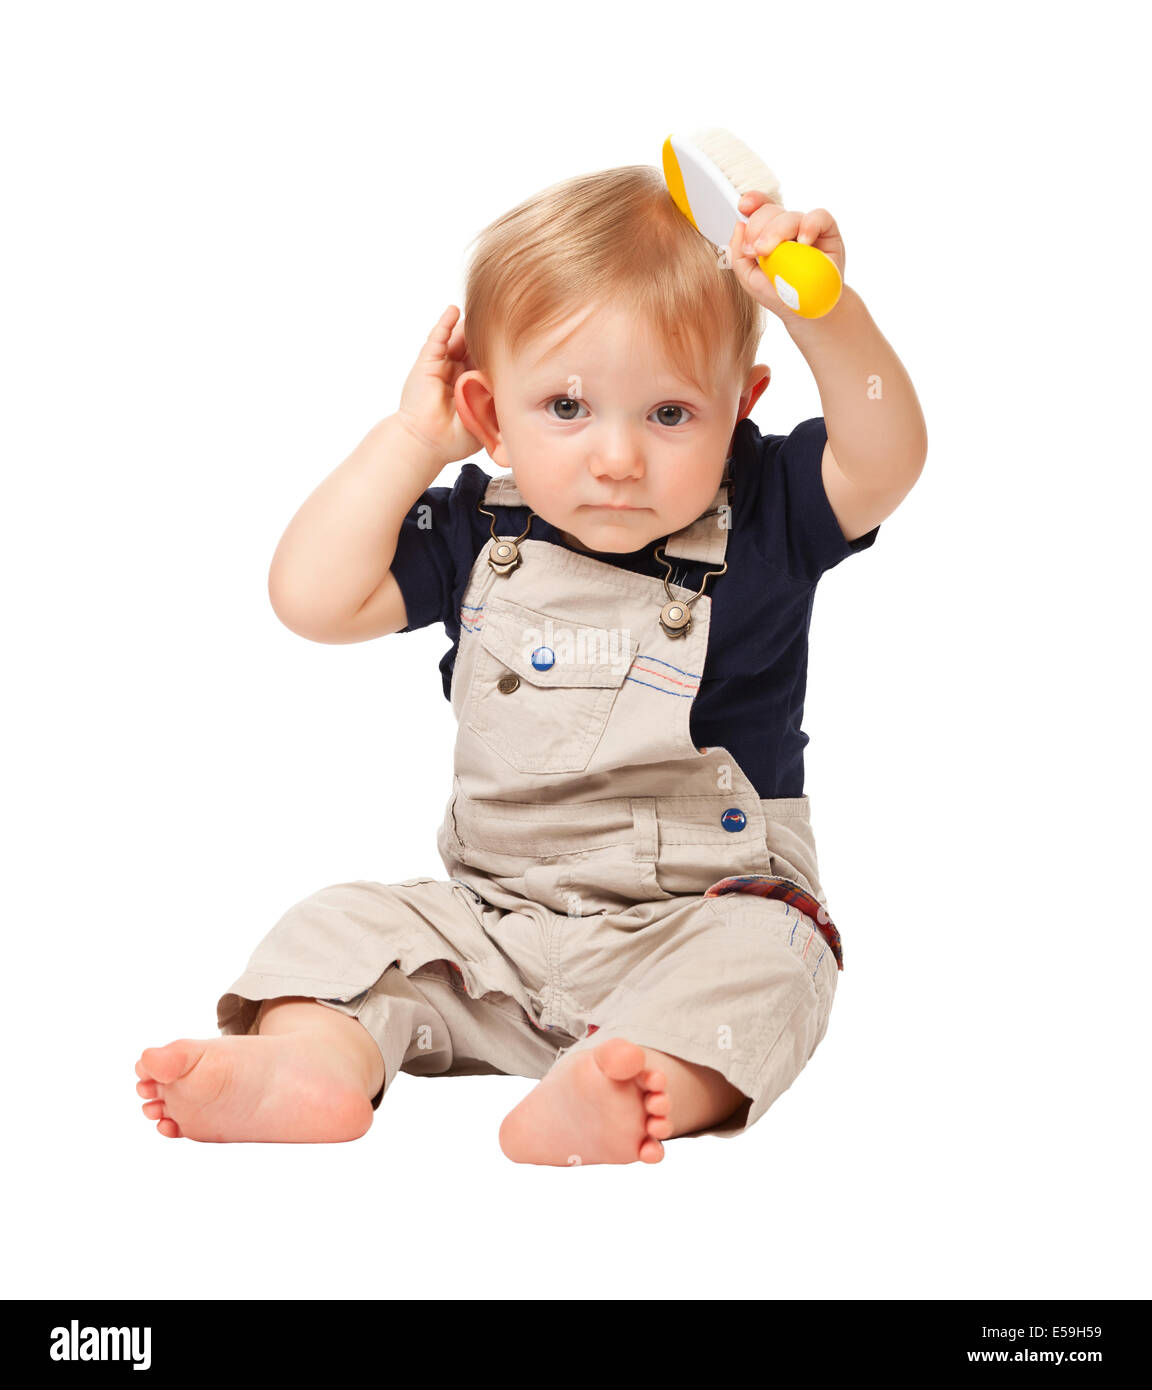 kleines Kind Verwendung Haarbürste isoliert auf weißem Hintergrund Stockfoto